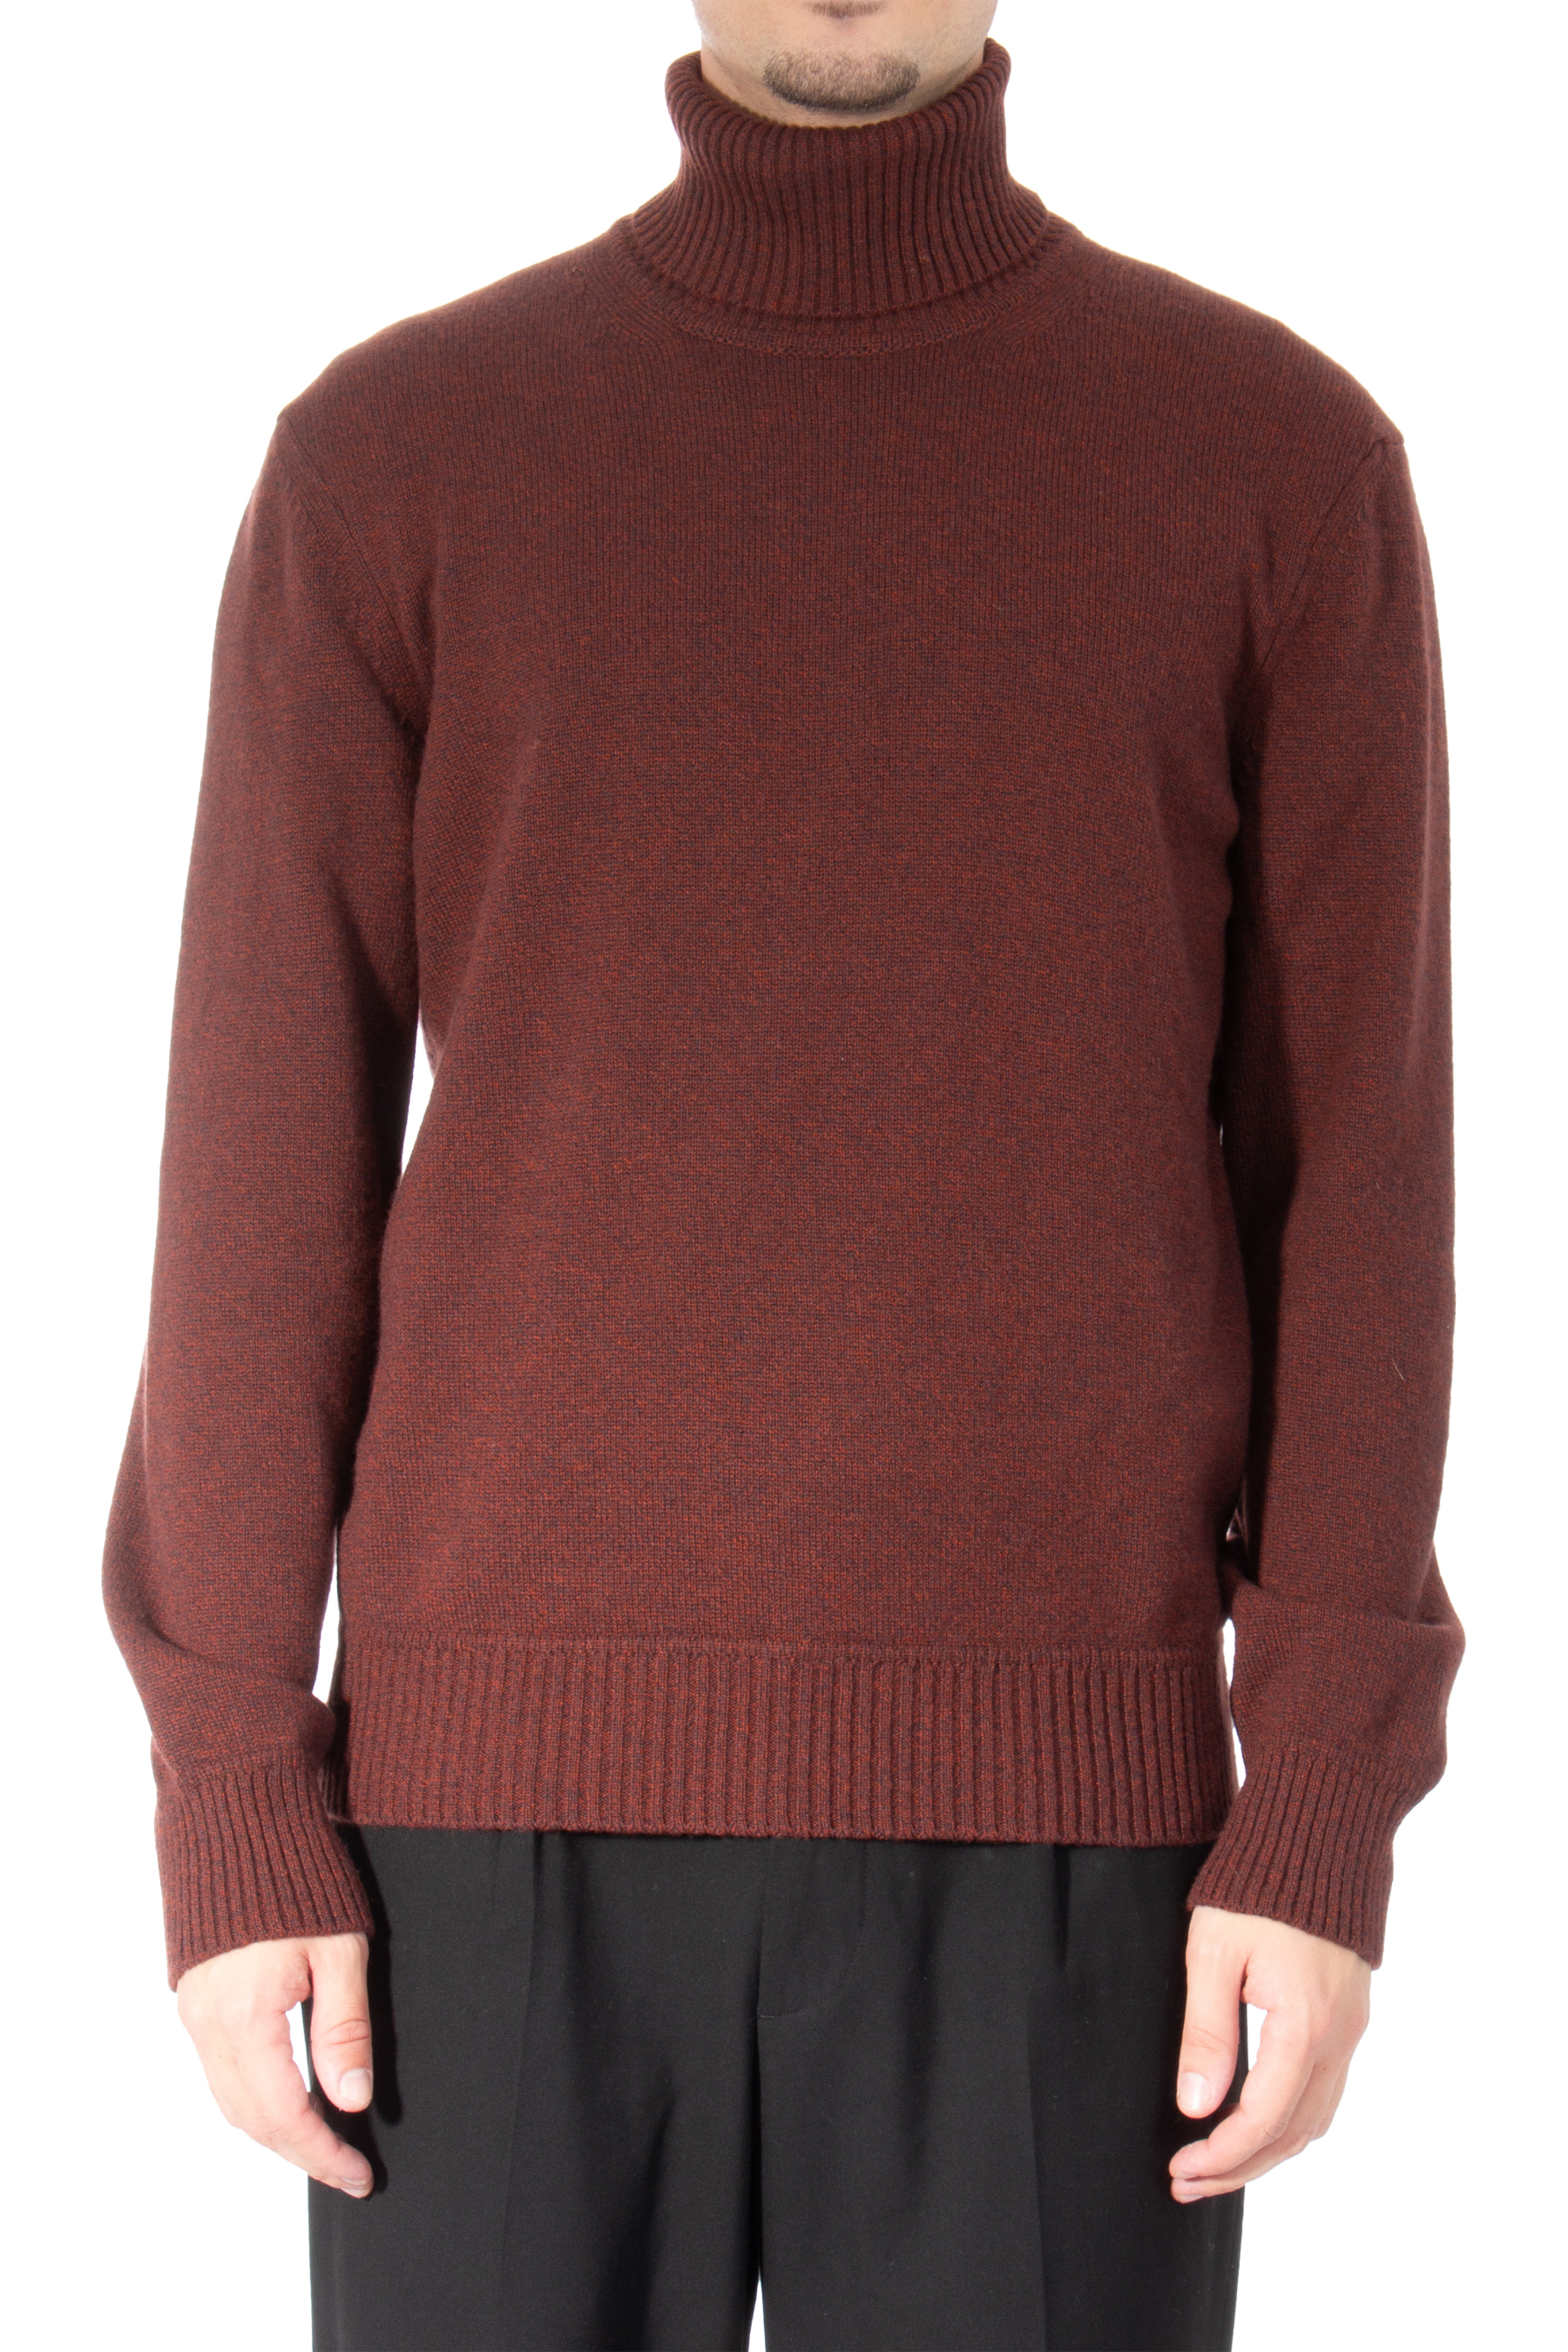 Oasi Cashmere Turtleneck Sweater